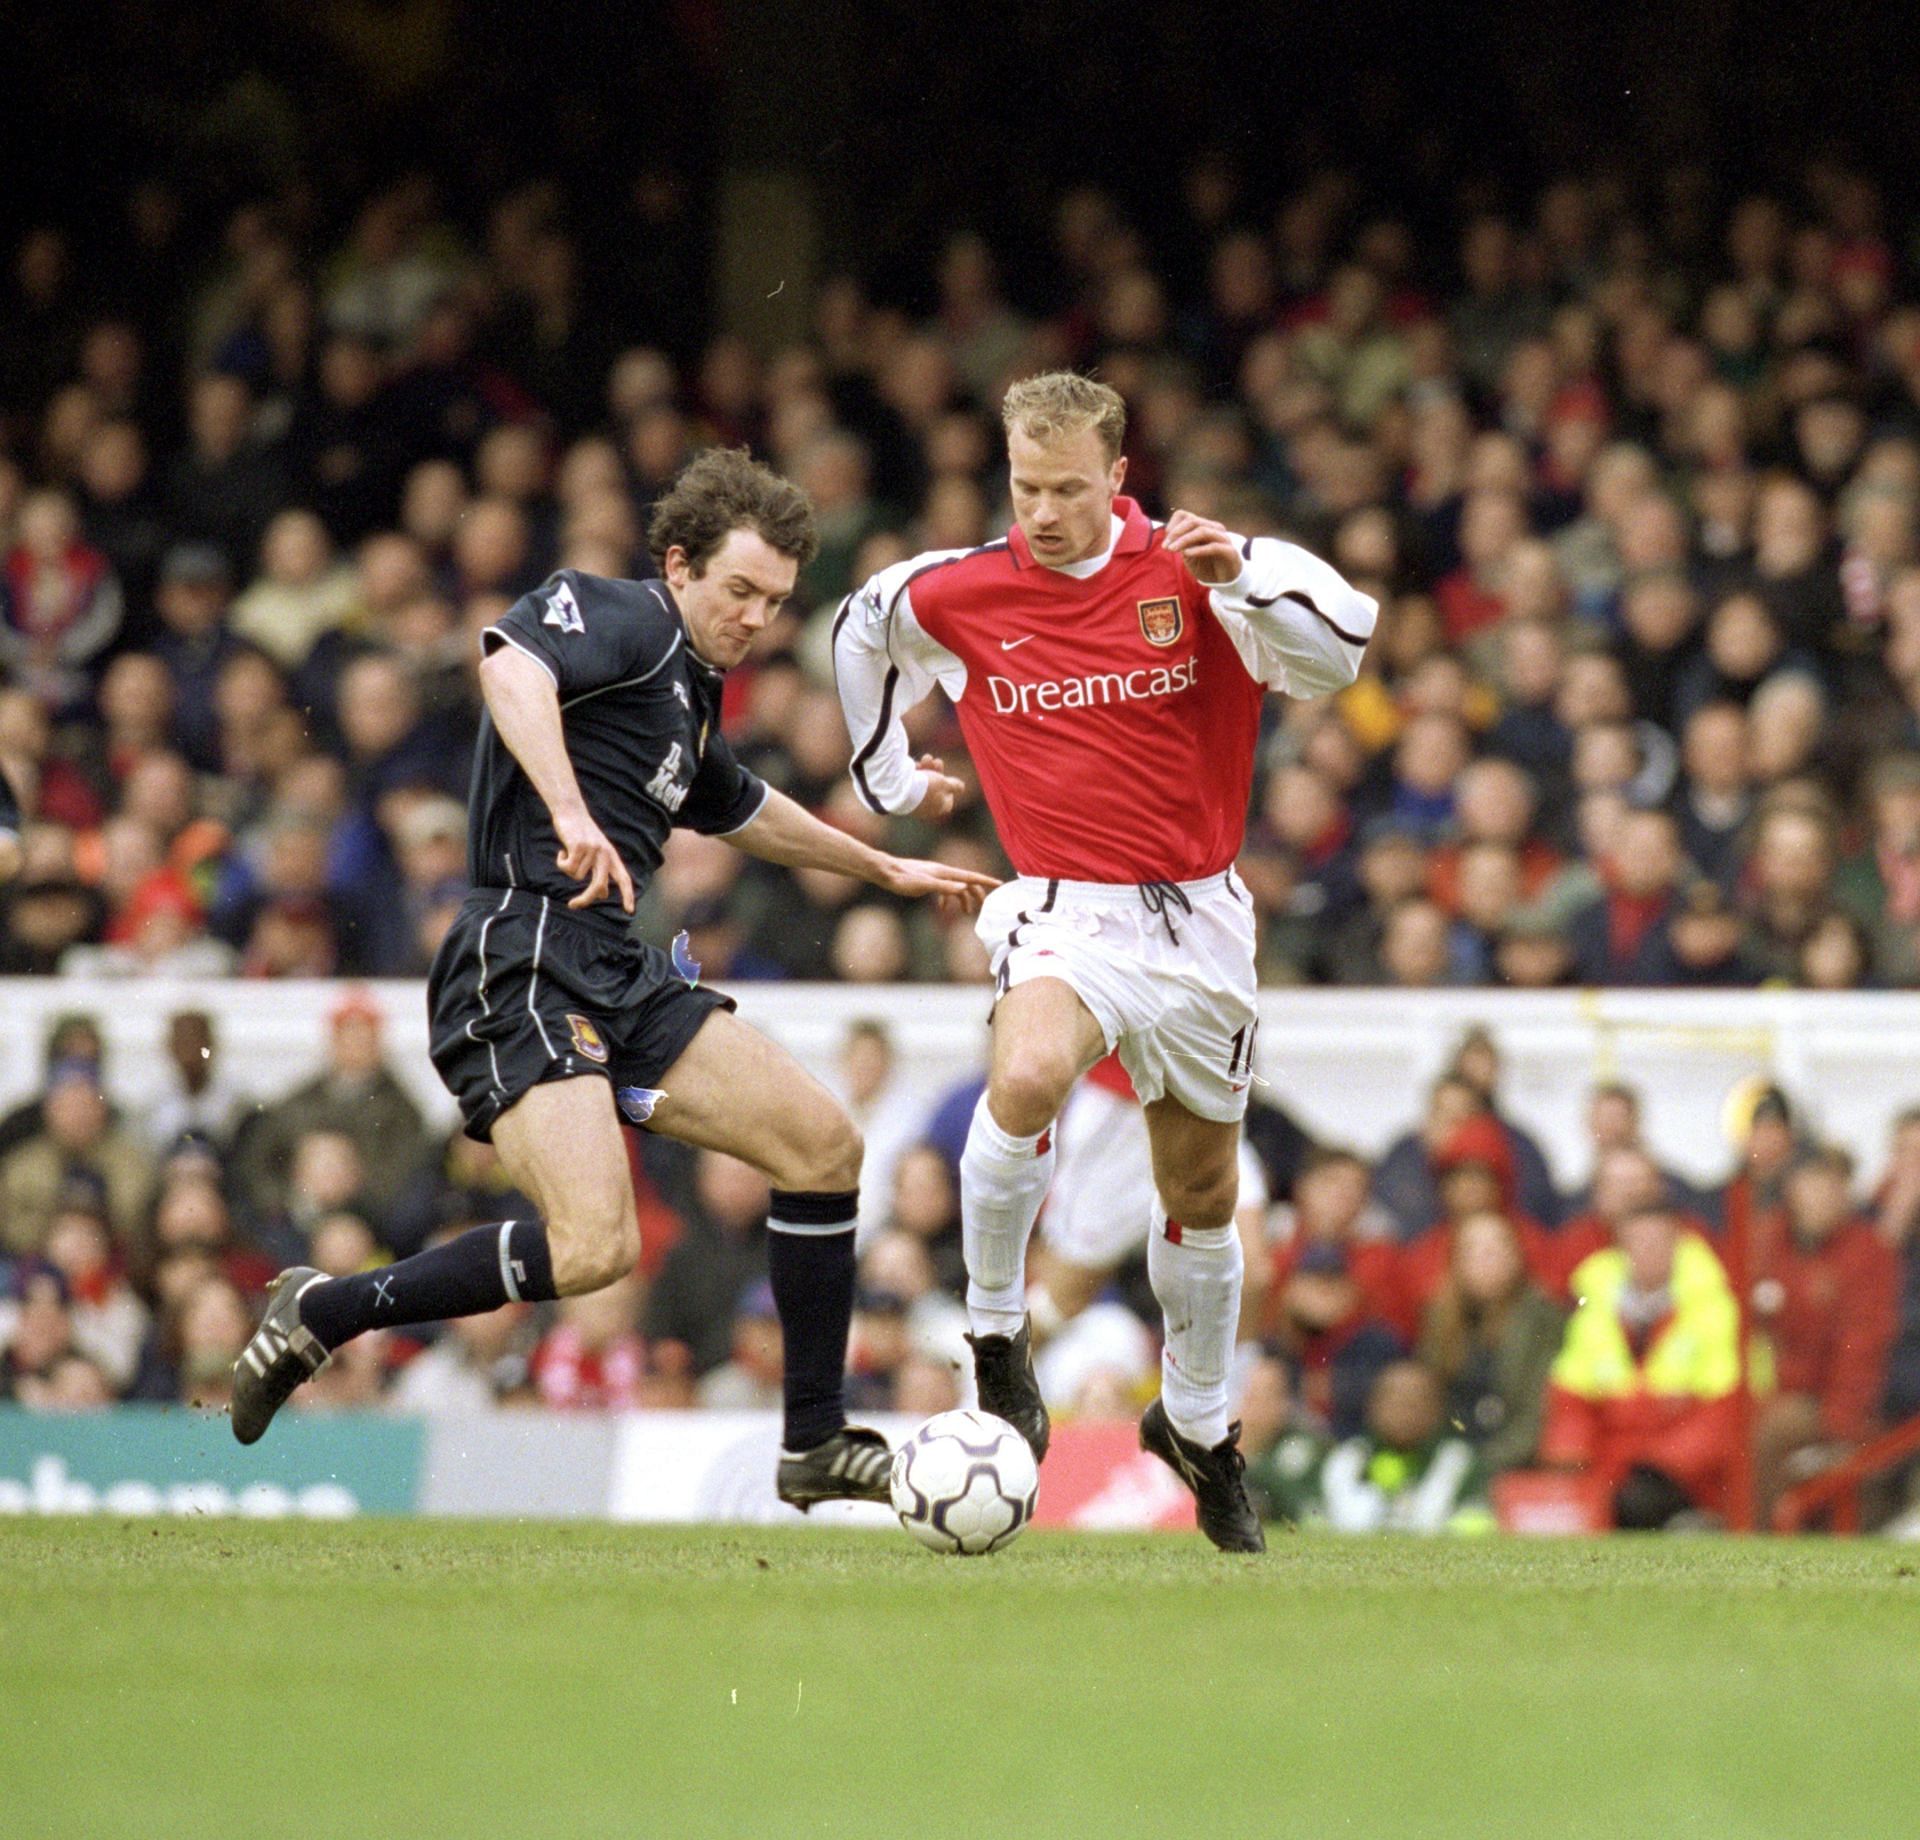 Dennis Bergkamp playing for Arsenal